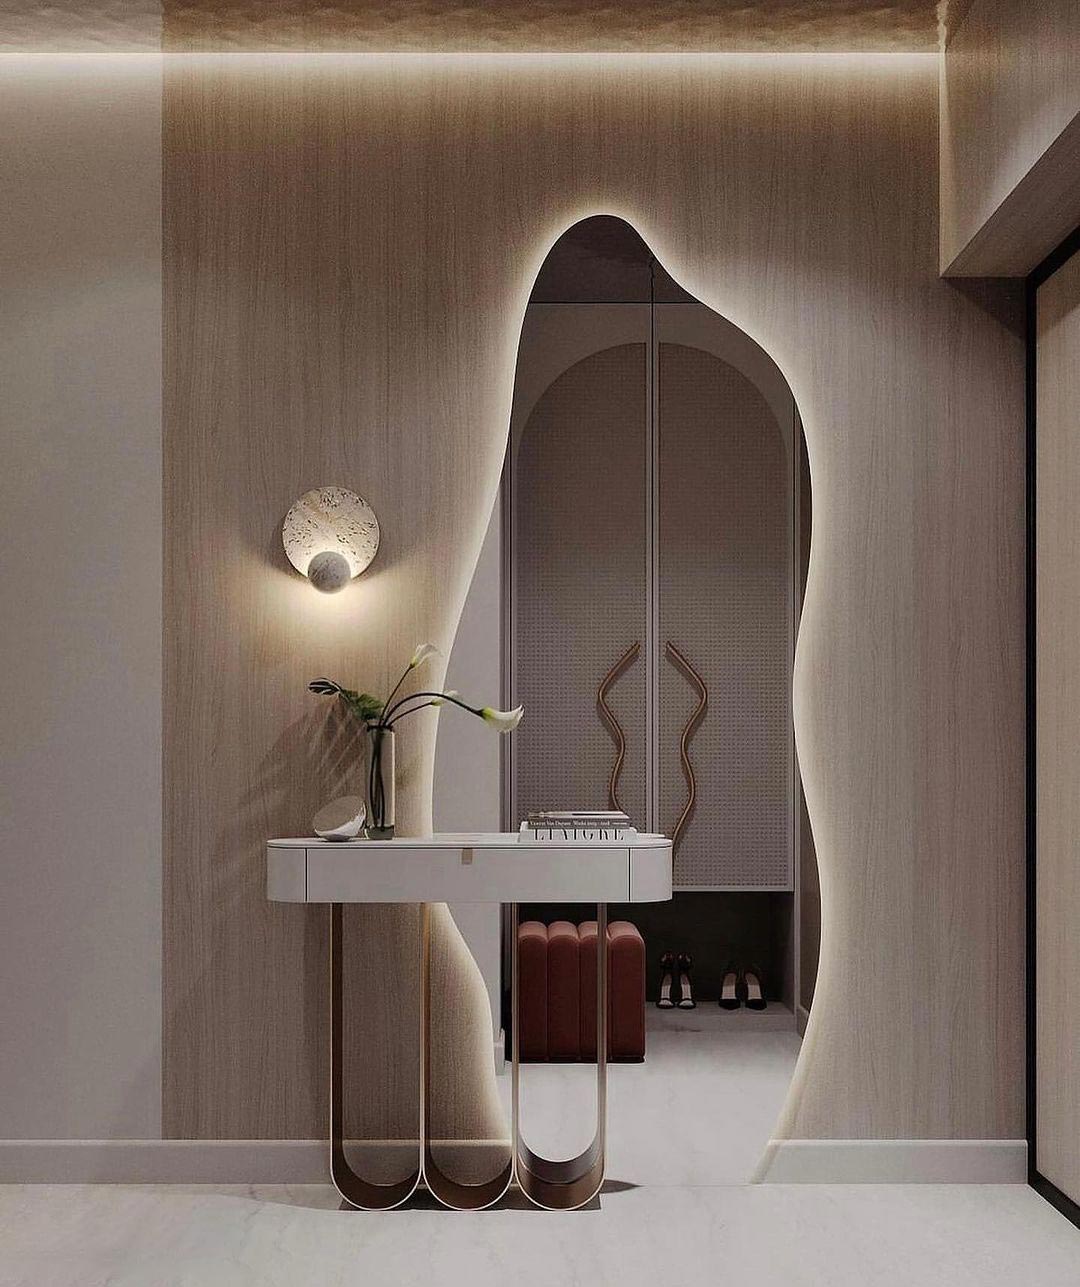 طرحهای زیبا و جذاب آینه کنسول در دکوراسیون داخلی